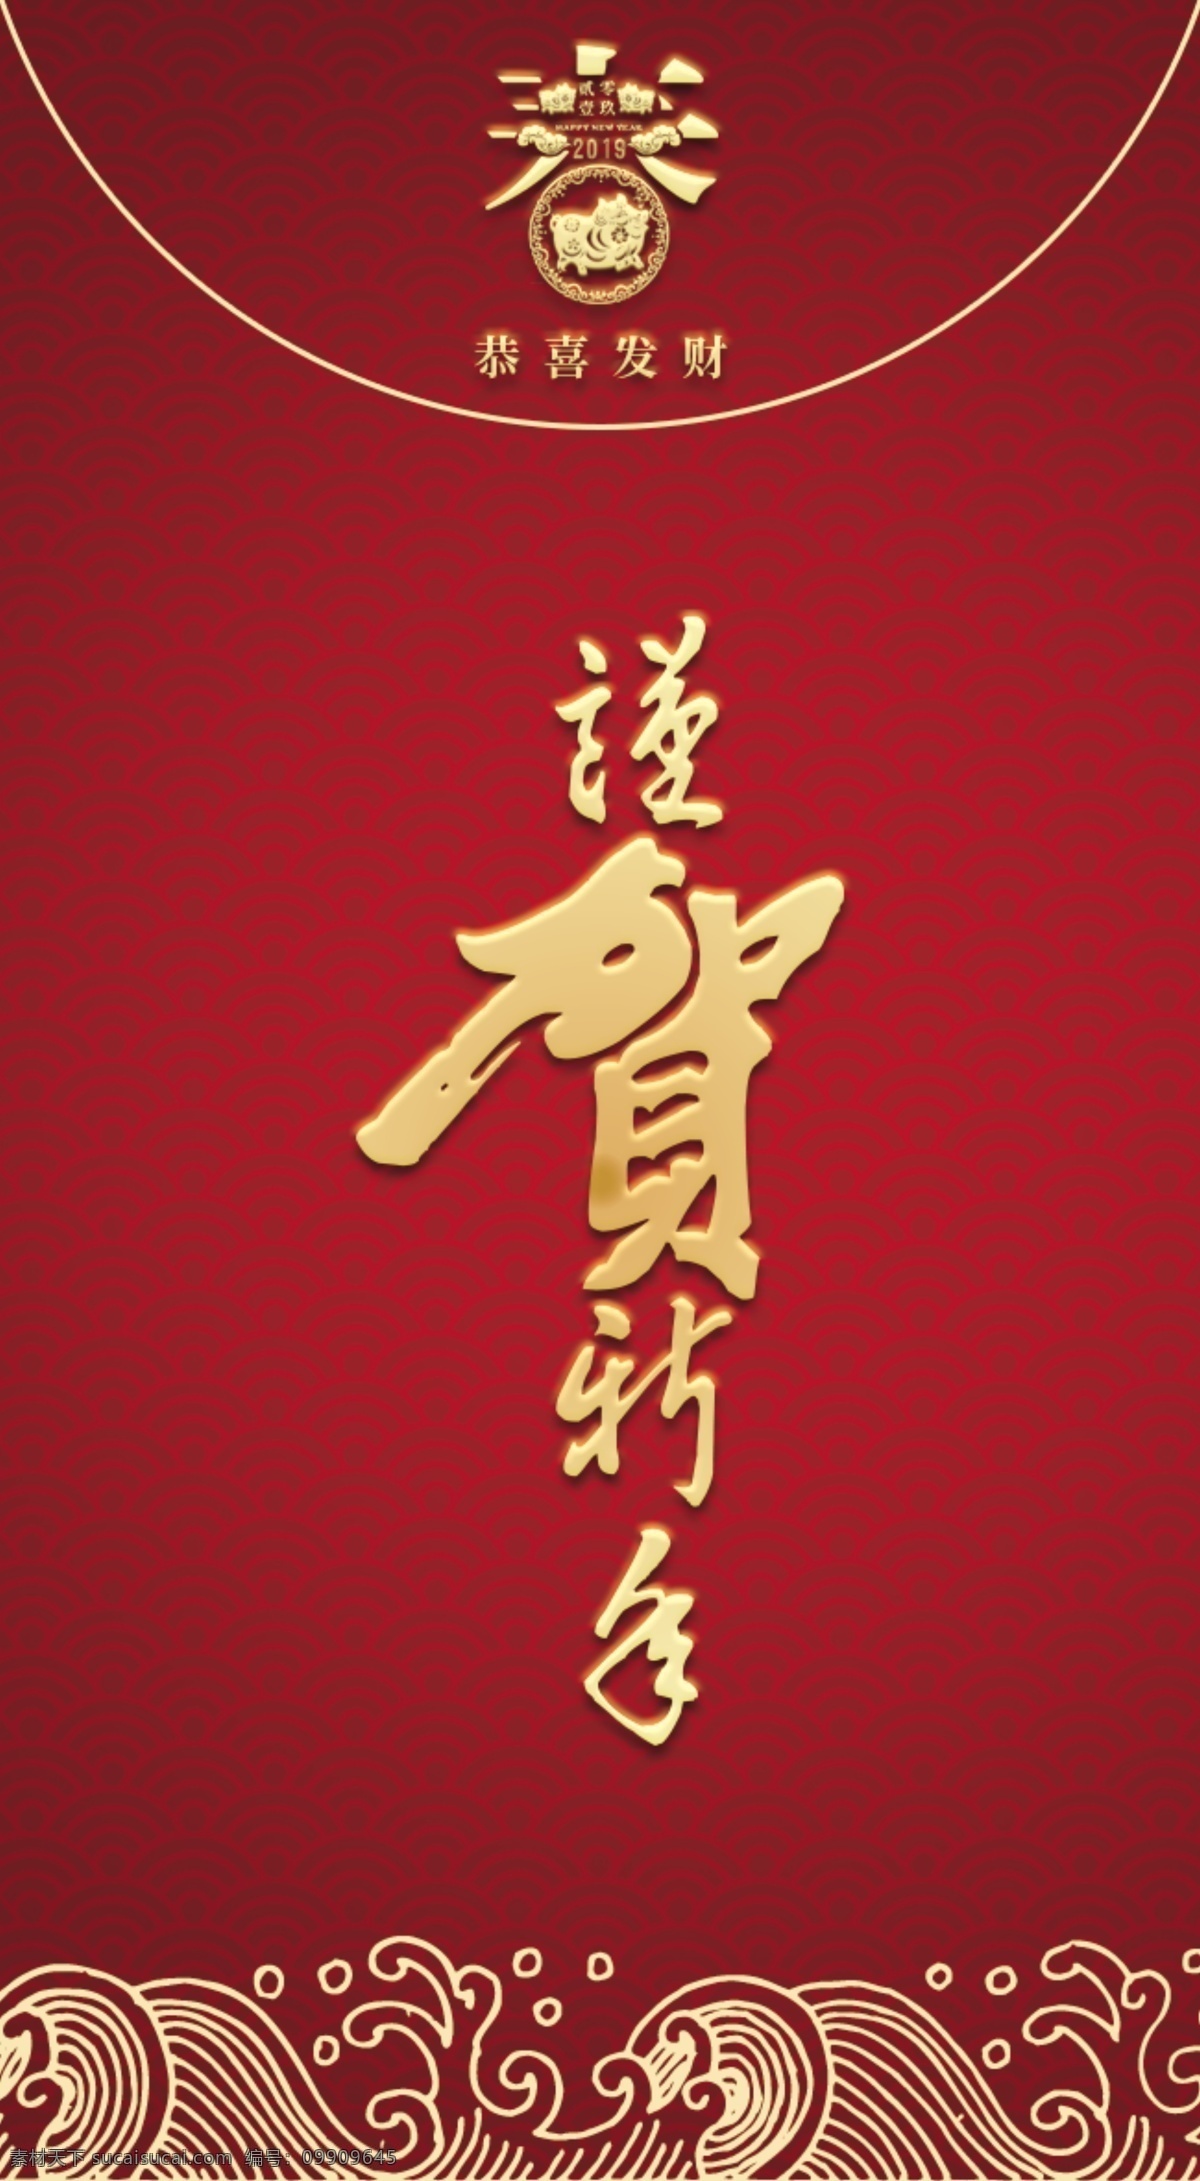 原创 中国 风 红色 创意 剪纸 猪年 快乐 红包 中国风 春节 简约 剪纸风 逐年 新年 2019